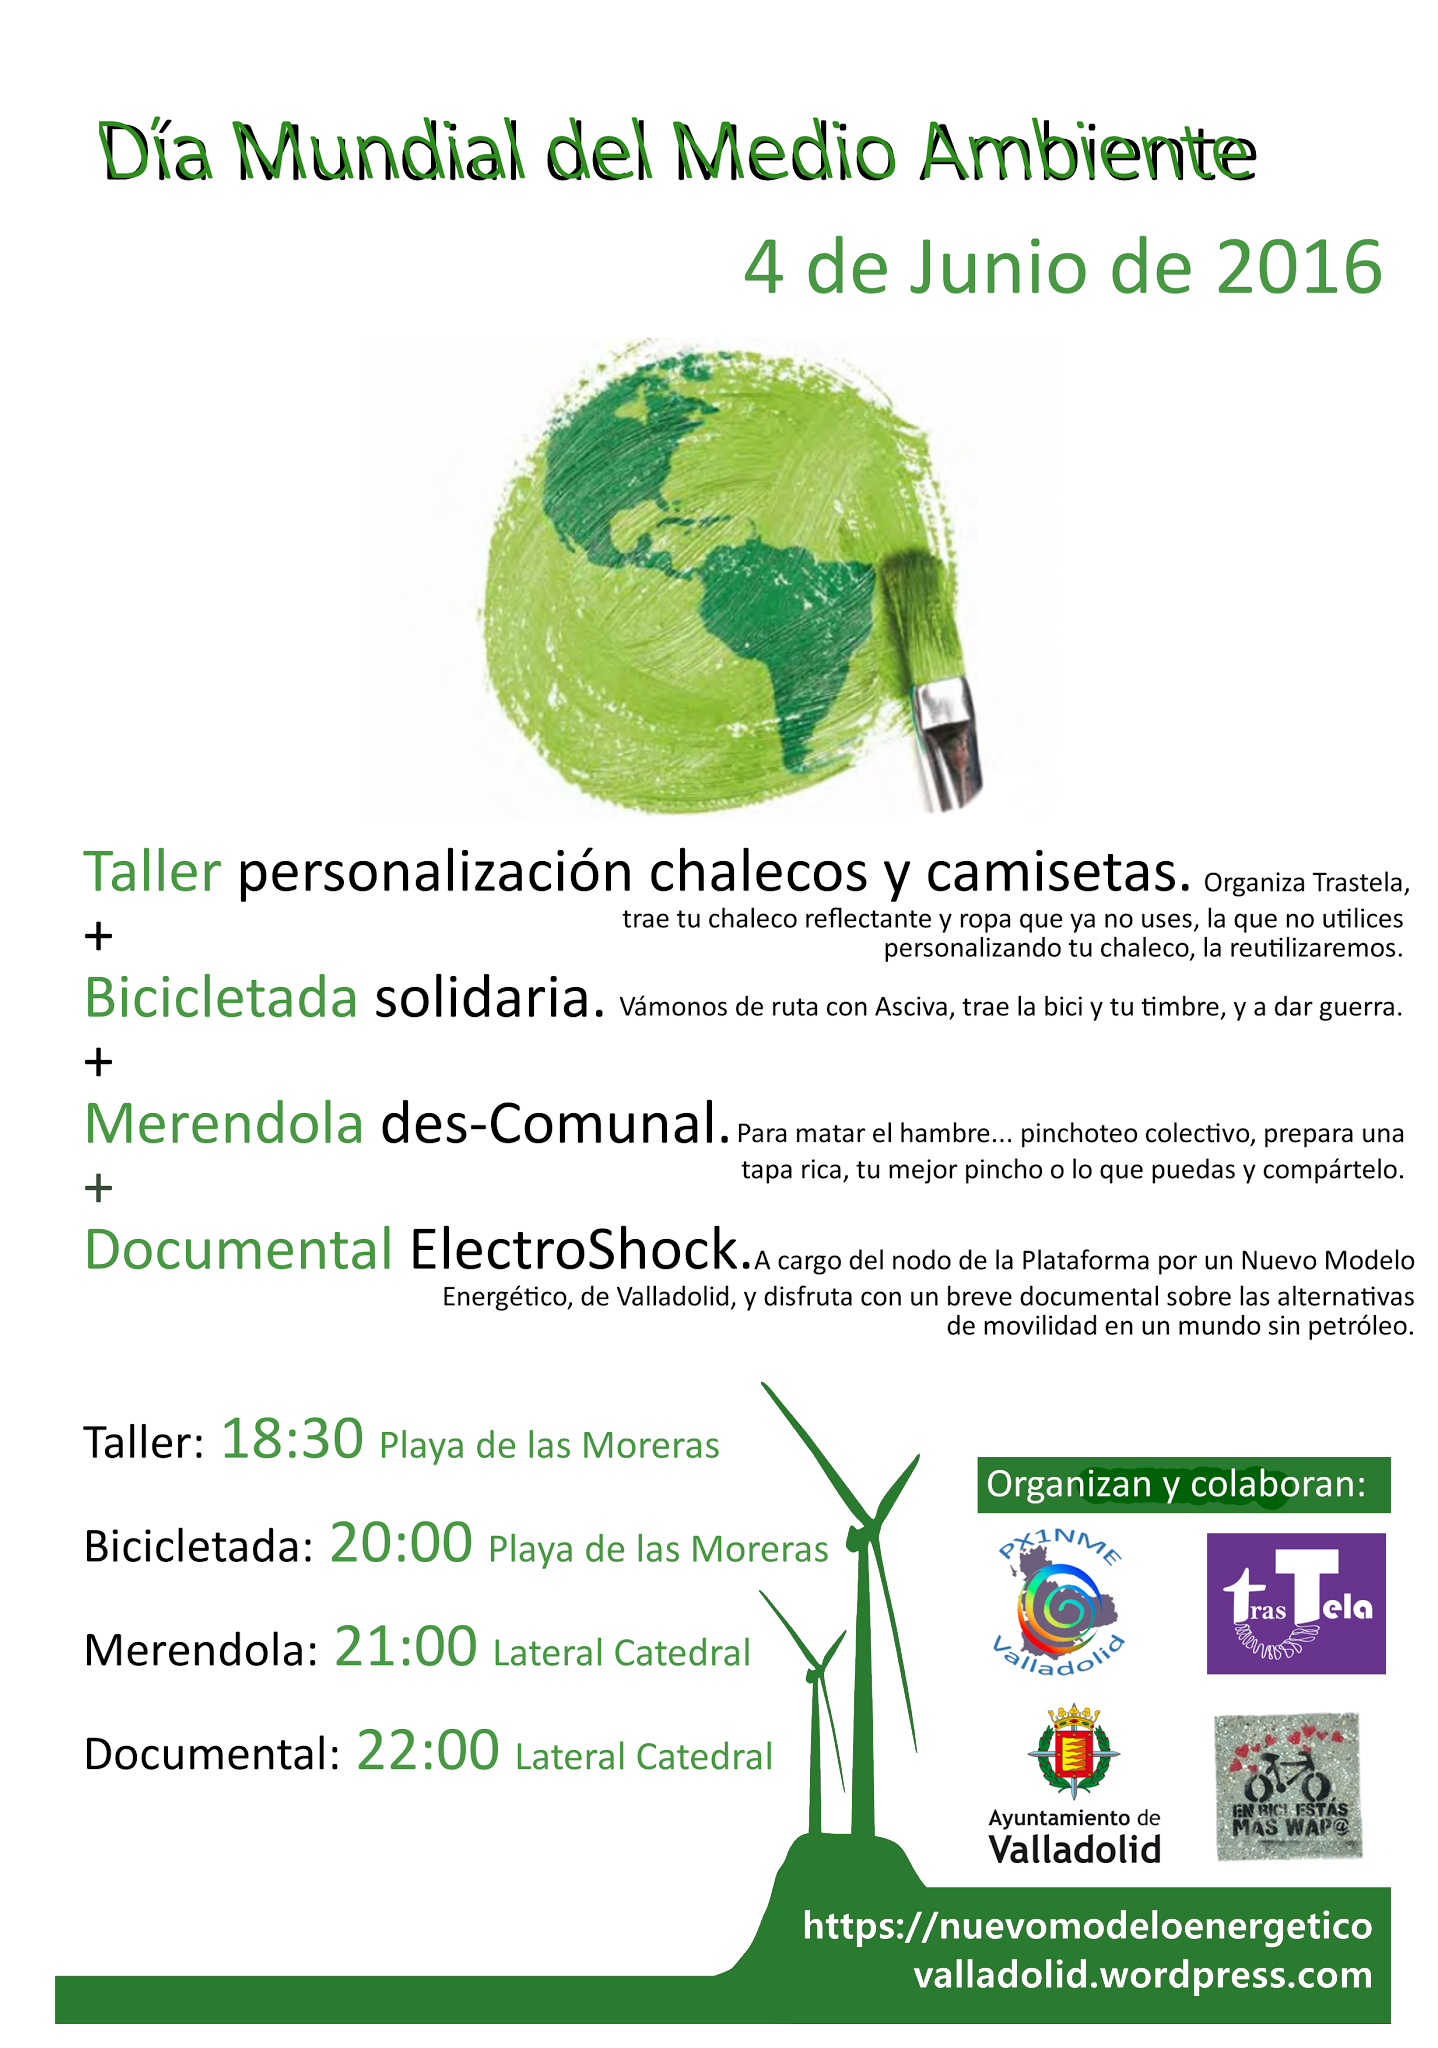 Día del Medio Ambiente 2016 en Valladolid